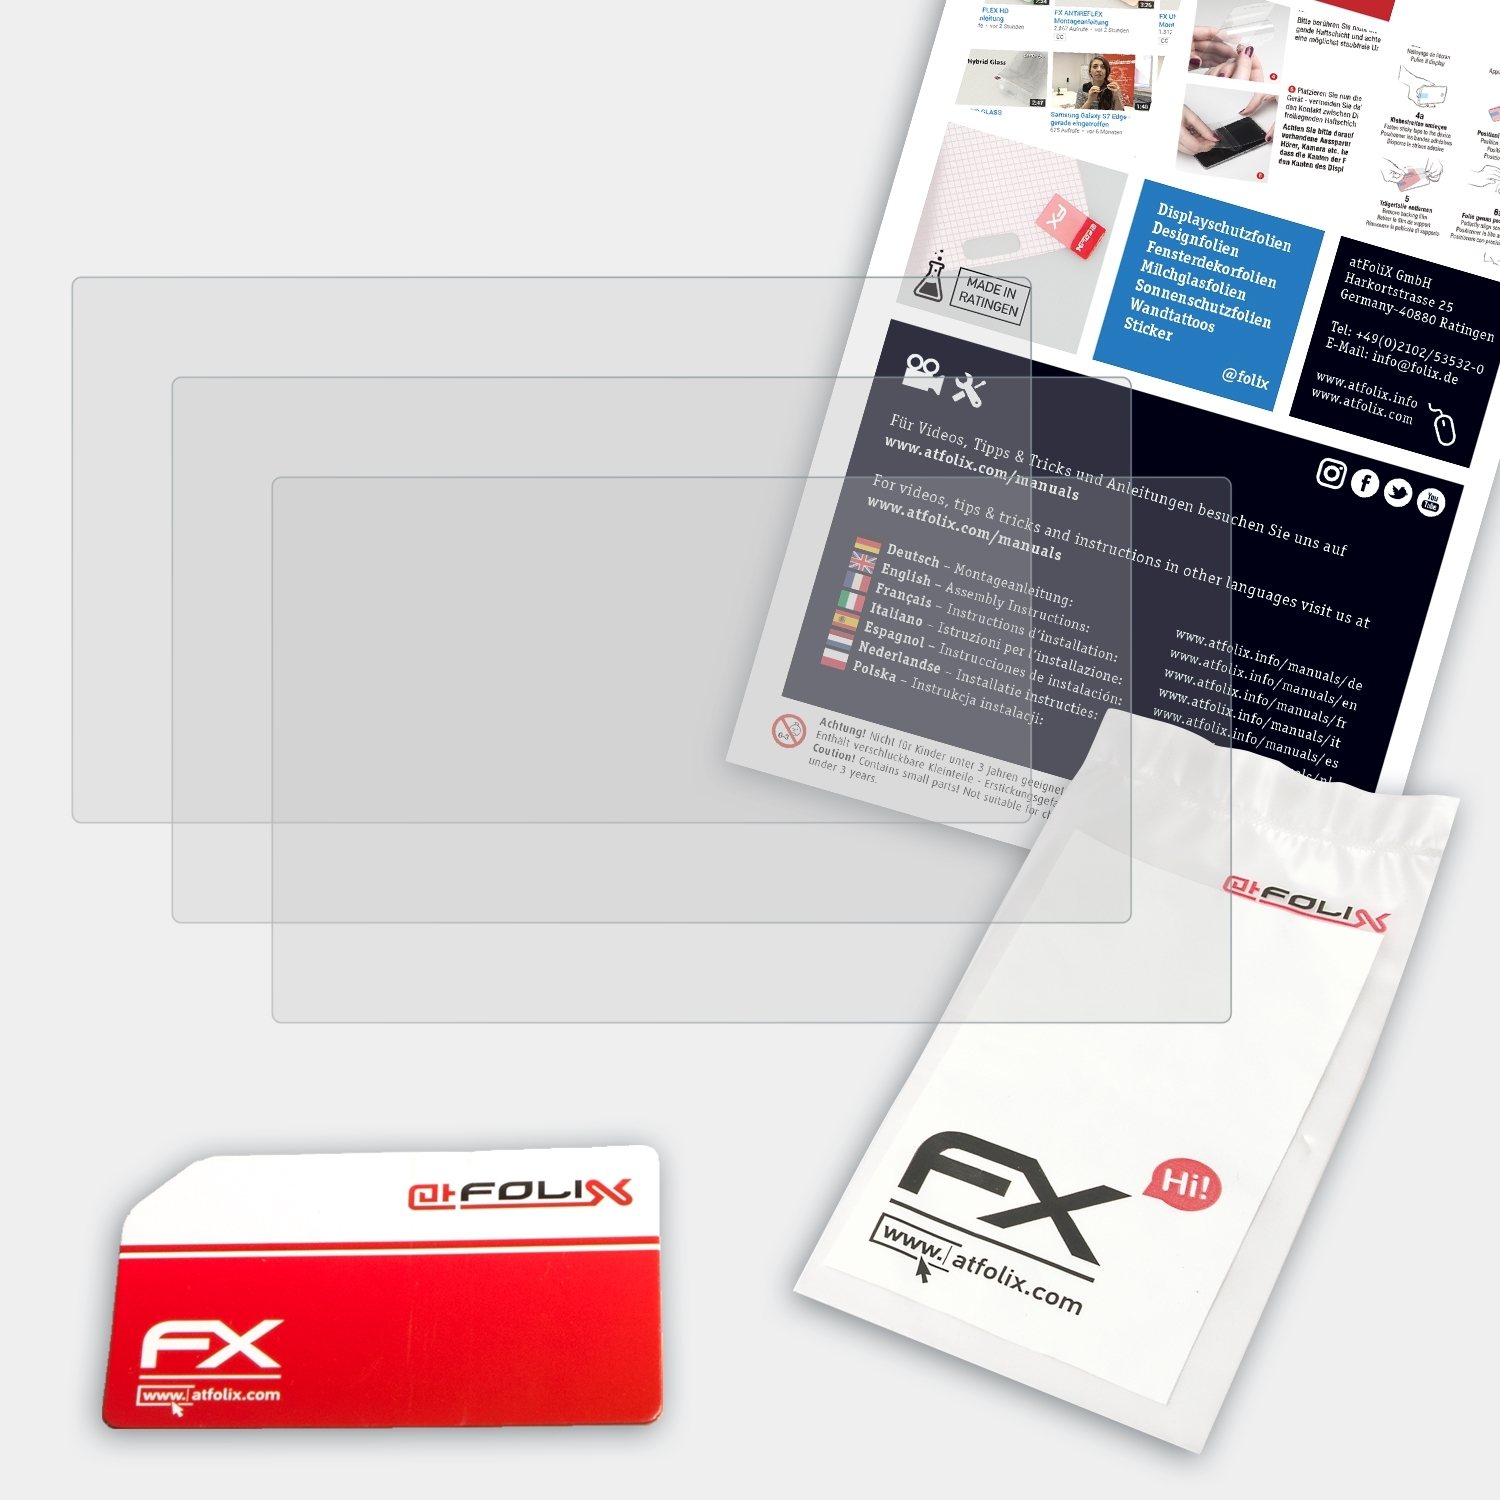 ATFOLIX 3x FX-Antireflex Displayschutz(für KR-G6) Kraemer-Automotive